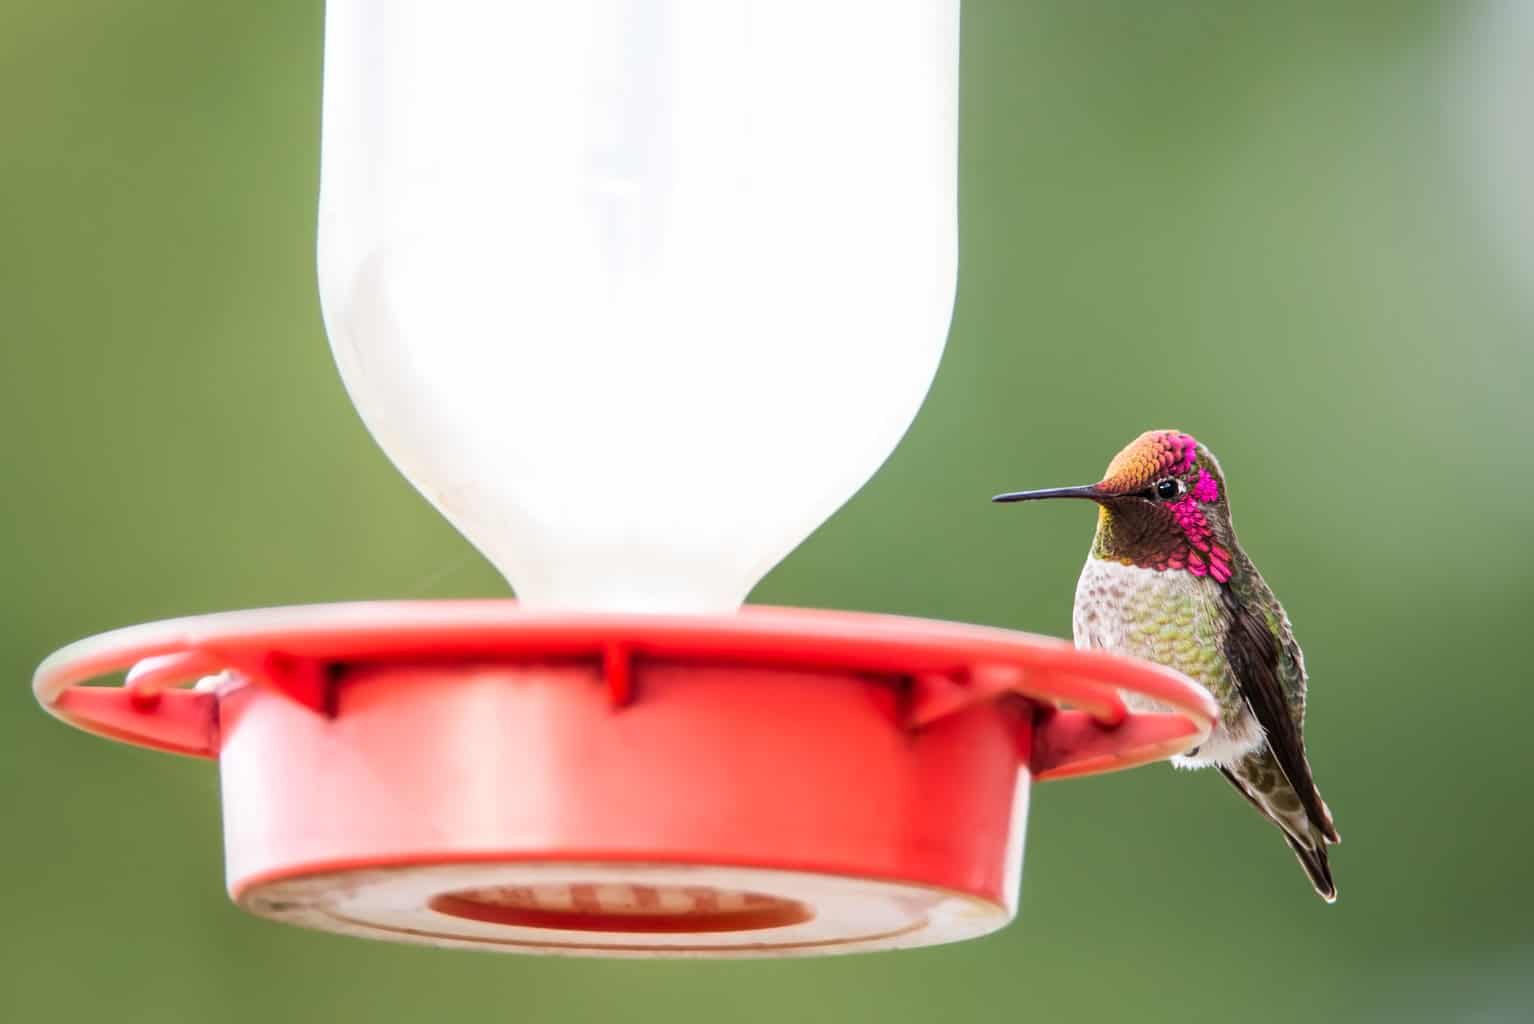 ¡Mi colibrí llega al comedero pero no come!